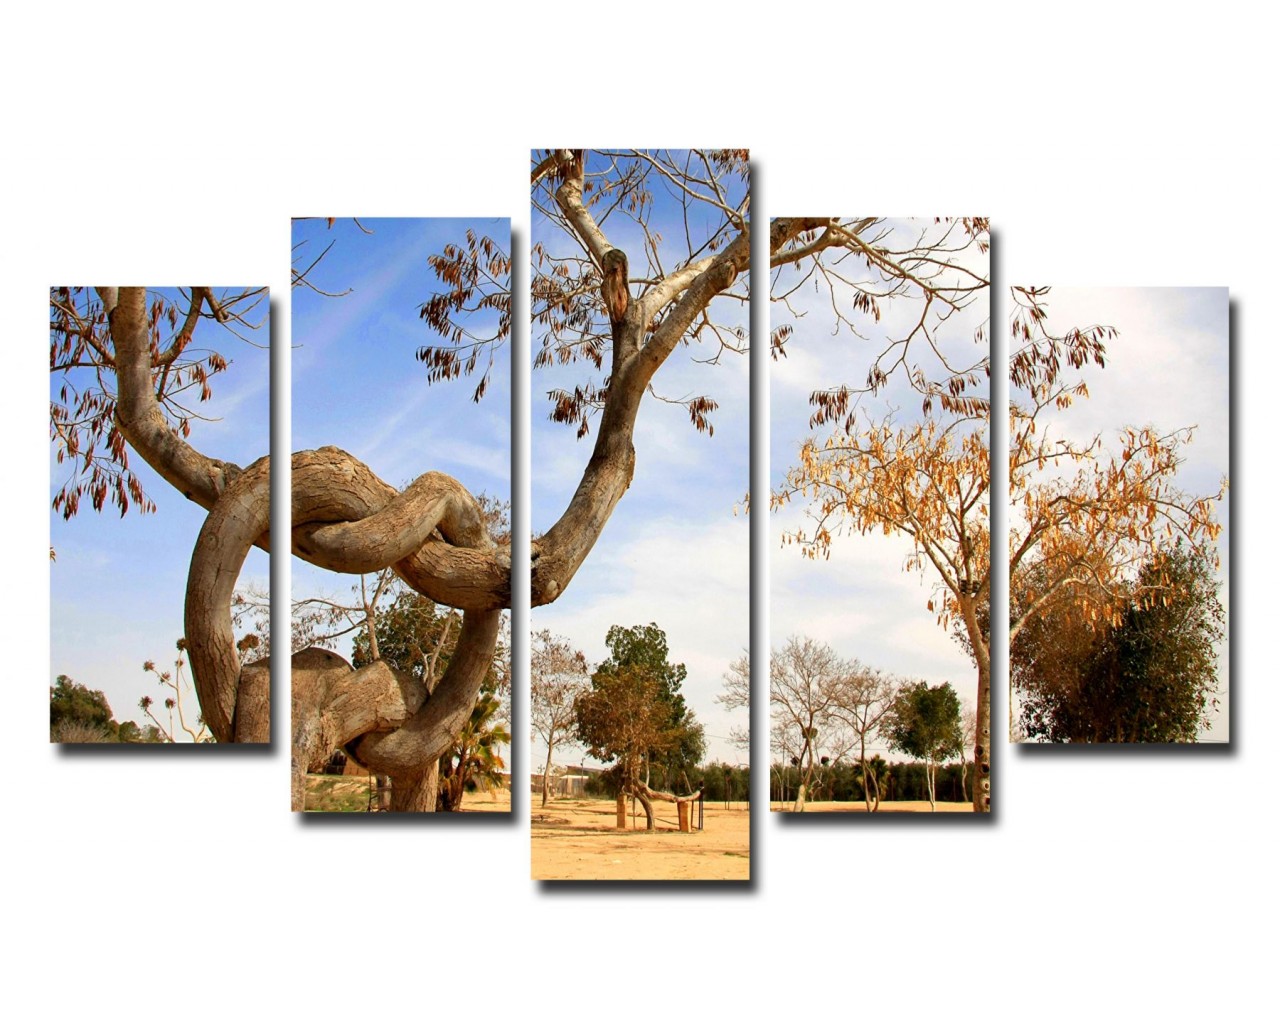 Модульная картина Сплетенные деревья, 135х80 см.